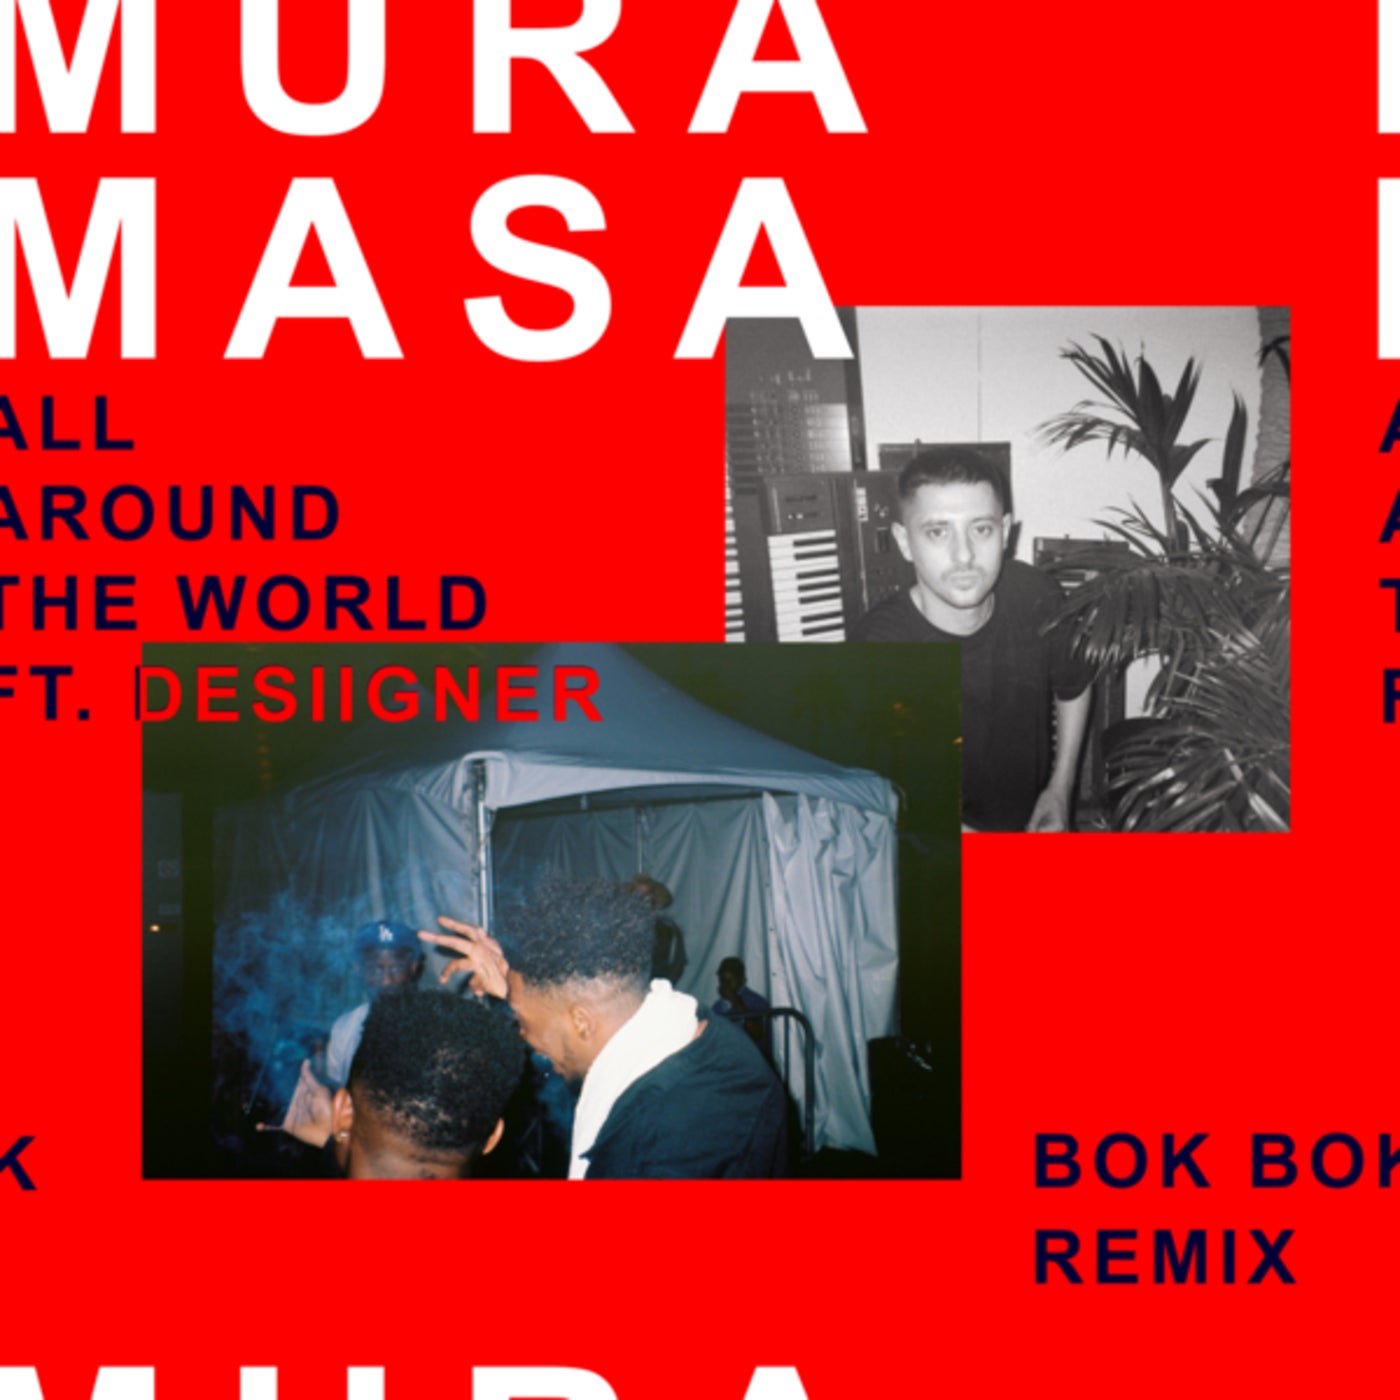 All Around The World (Bok Bok Remix)